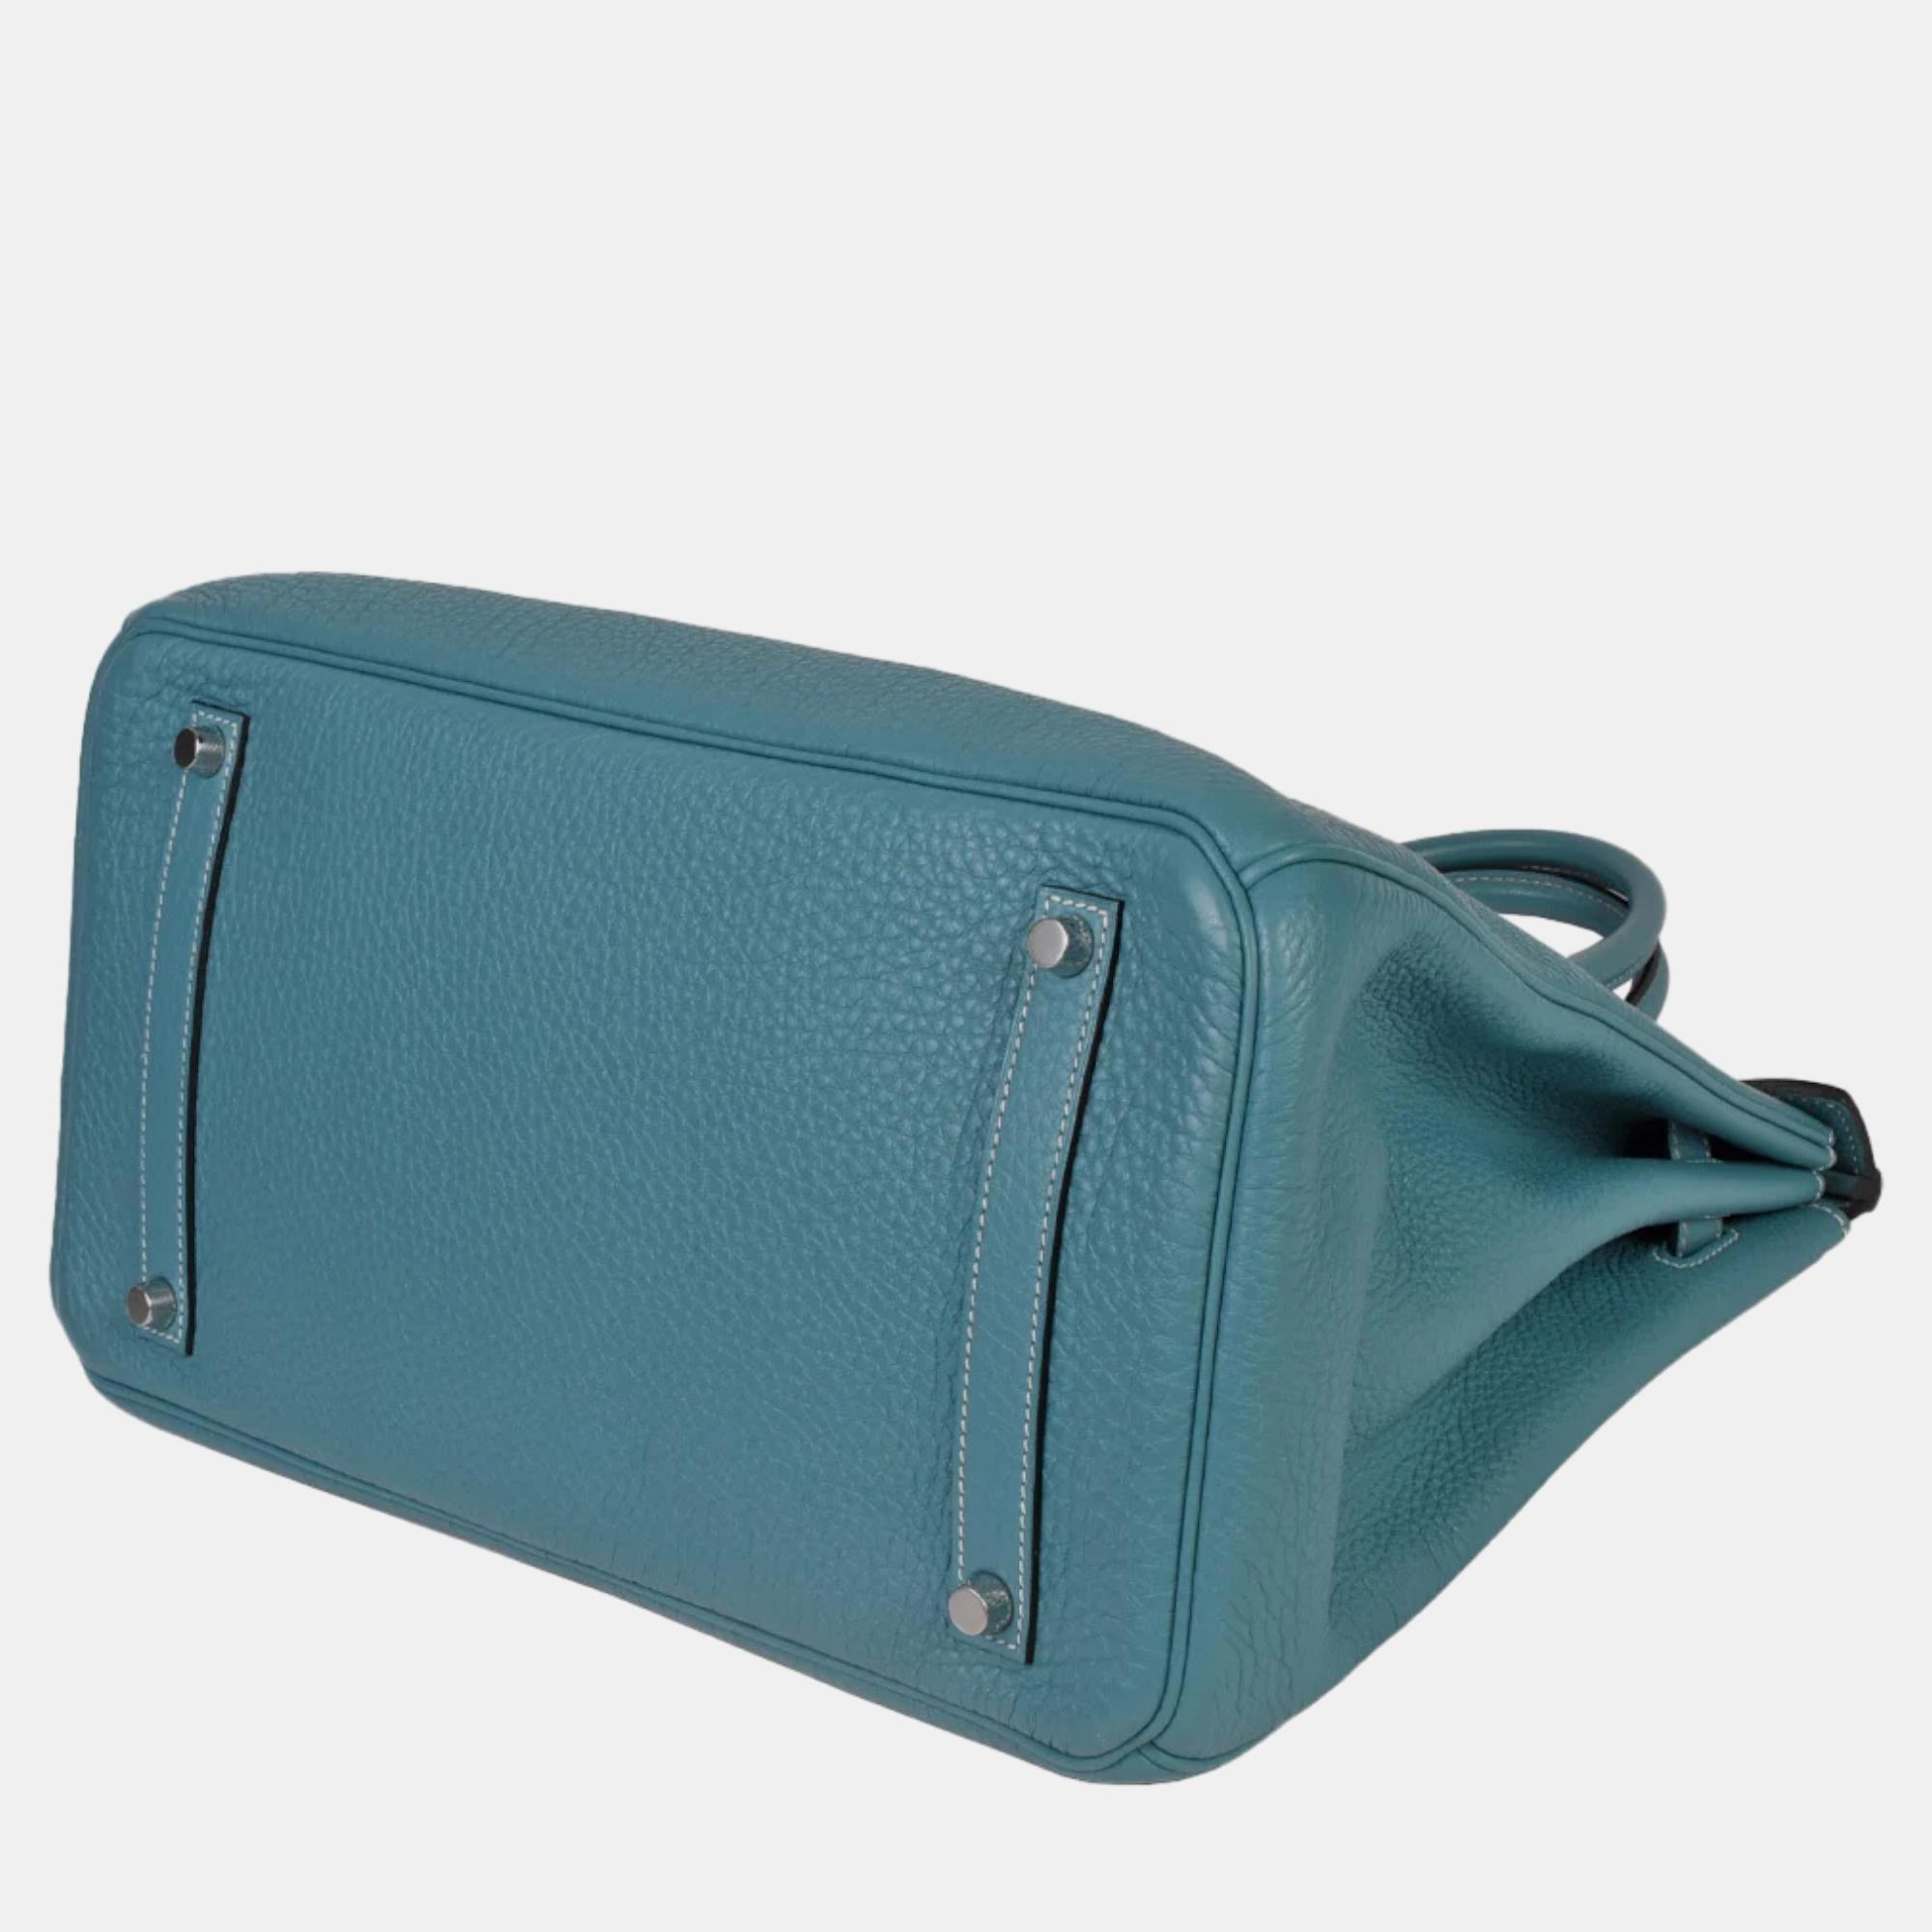 Hermes Birkin 35 Togo N Engraved Blue Handbag